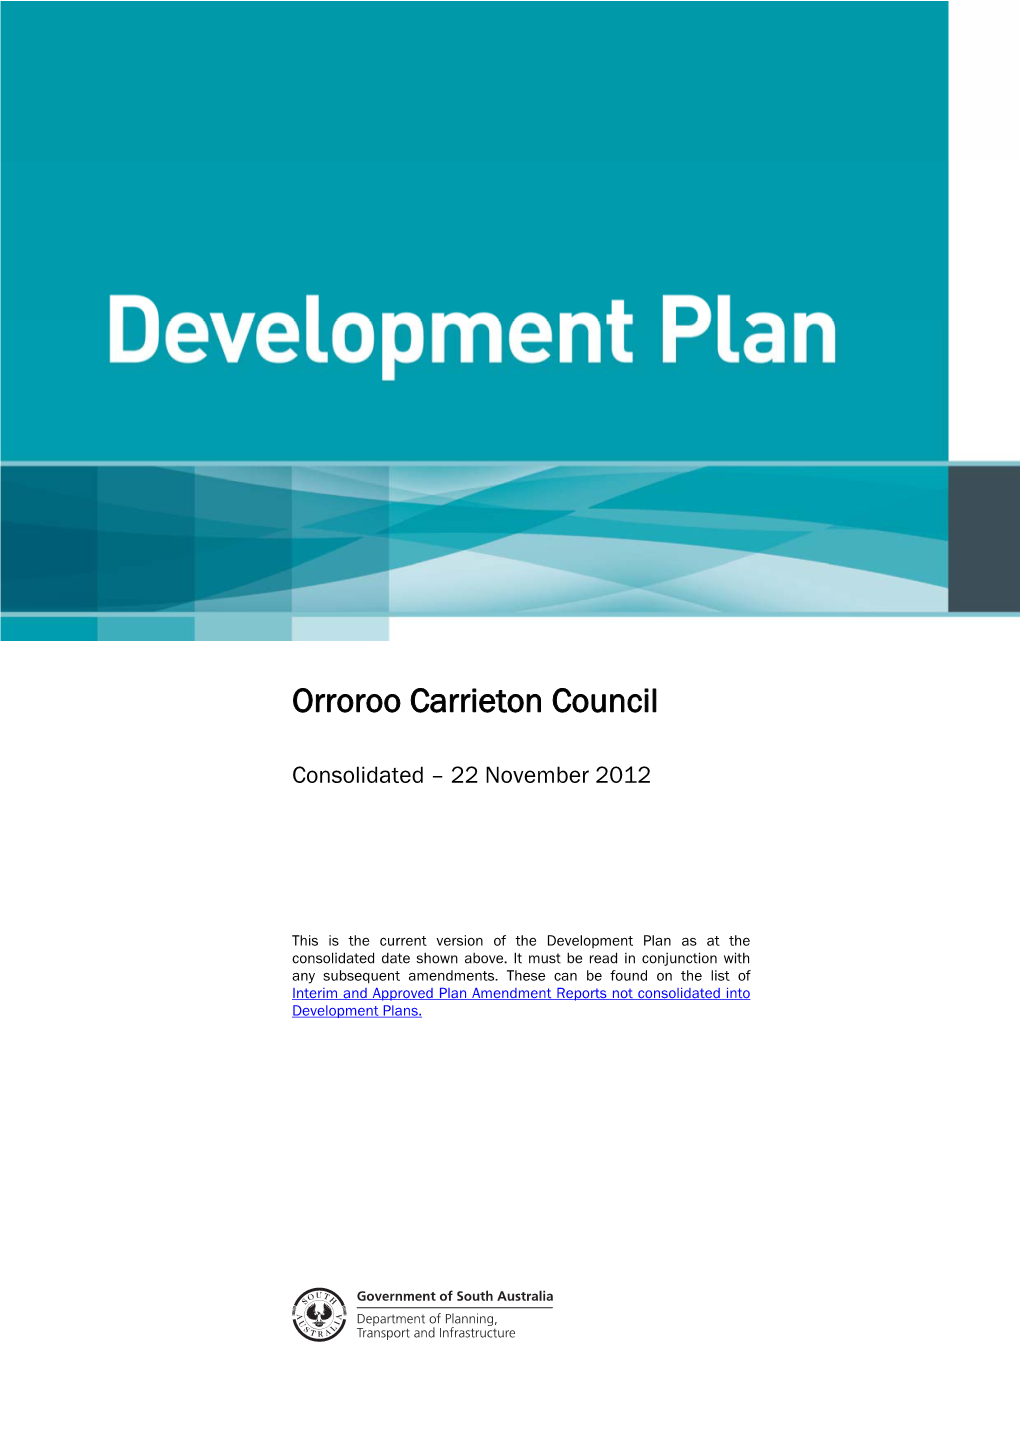 Orroroo Carrieton Council